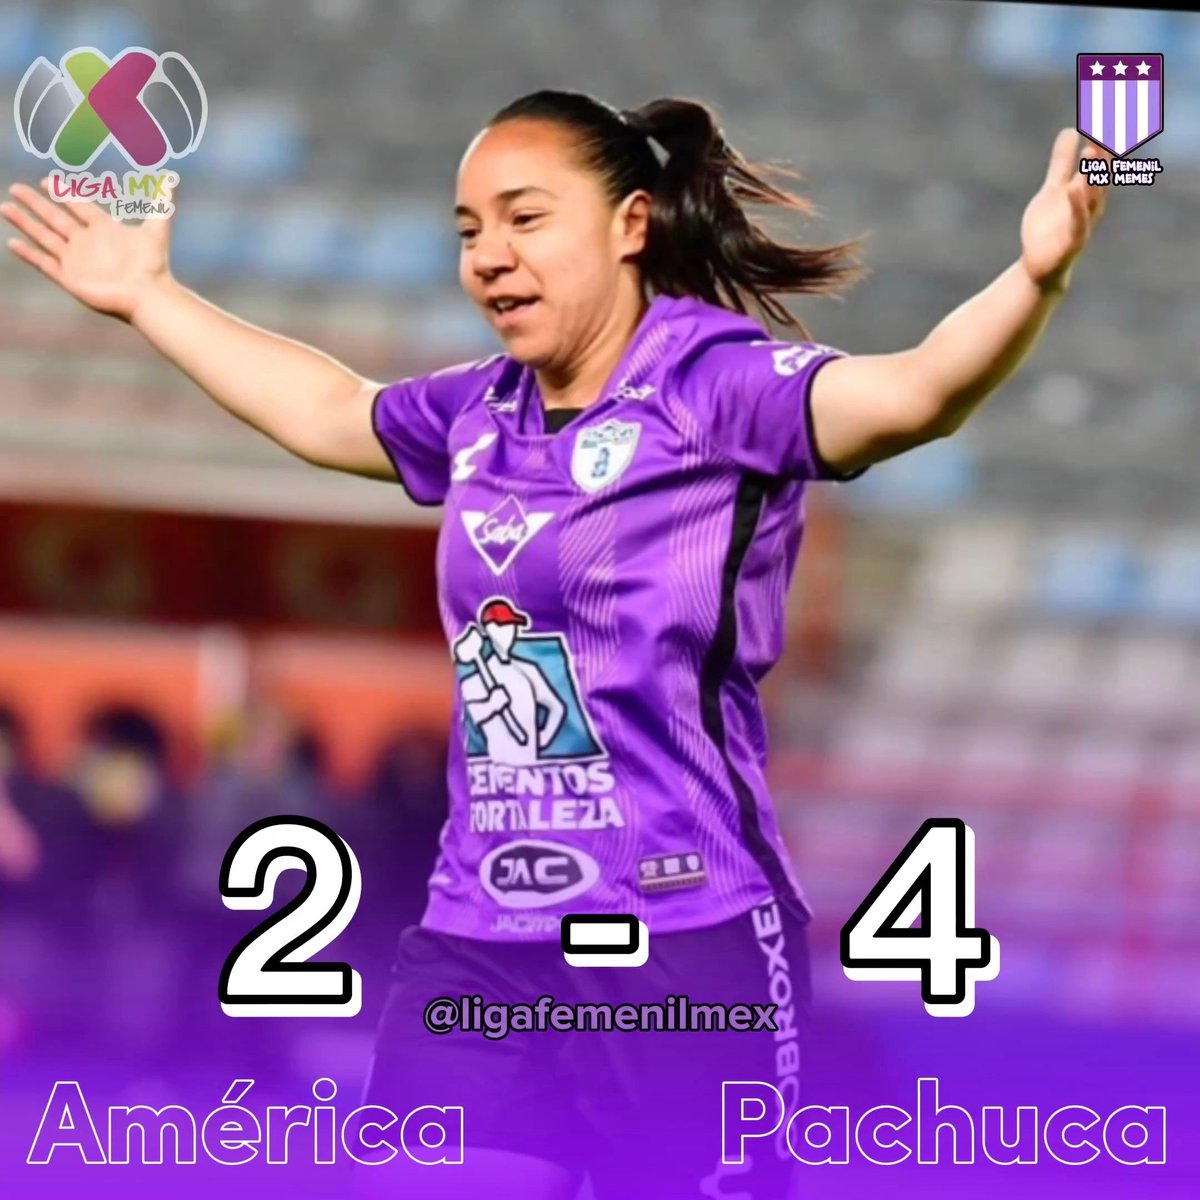 GANARON LAS TUZAS
En gran partido, Pachuca venció al América con goles de Charlyn Corral (x2), Cata Usme y Chinwendu 💜💜💜
#LigaBBVAMXFemenil #VamosPorEllas #FútbolFemenino #VamosLasTuzas